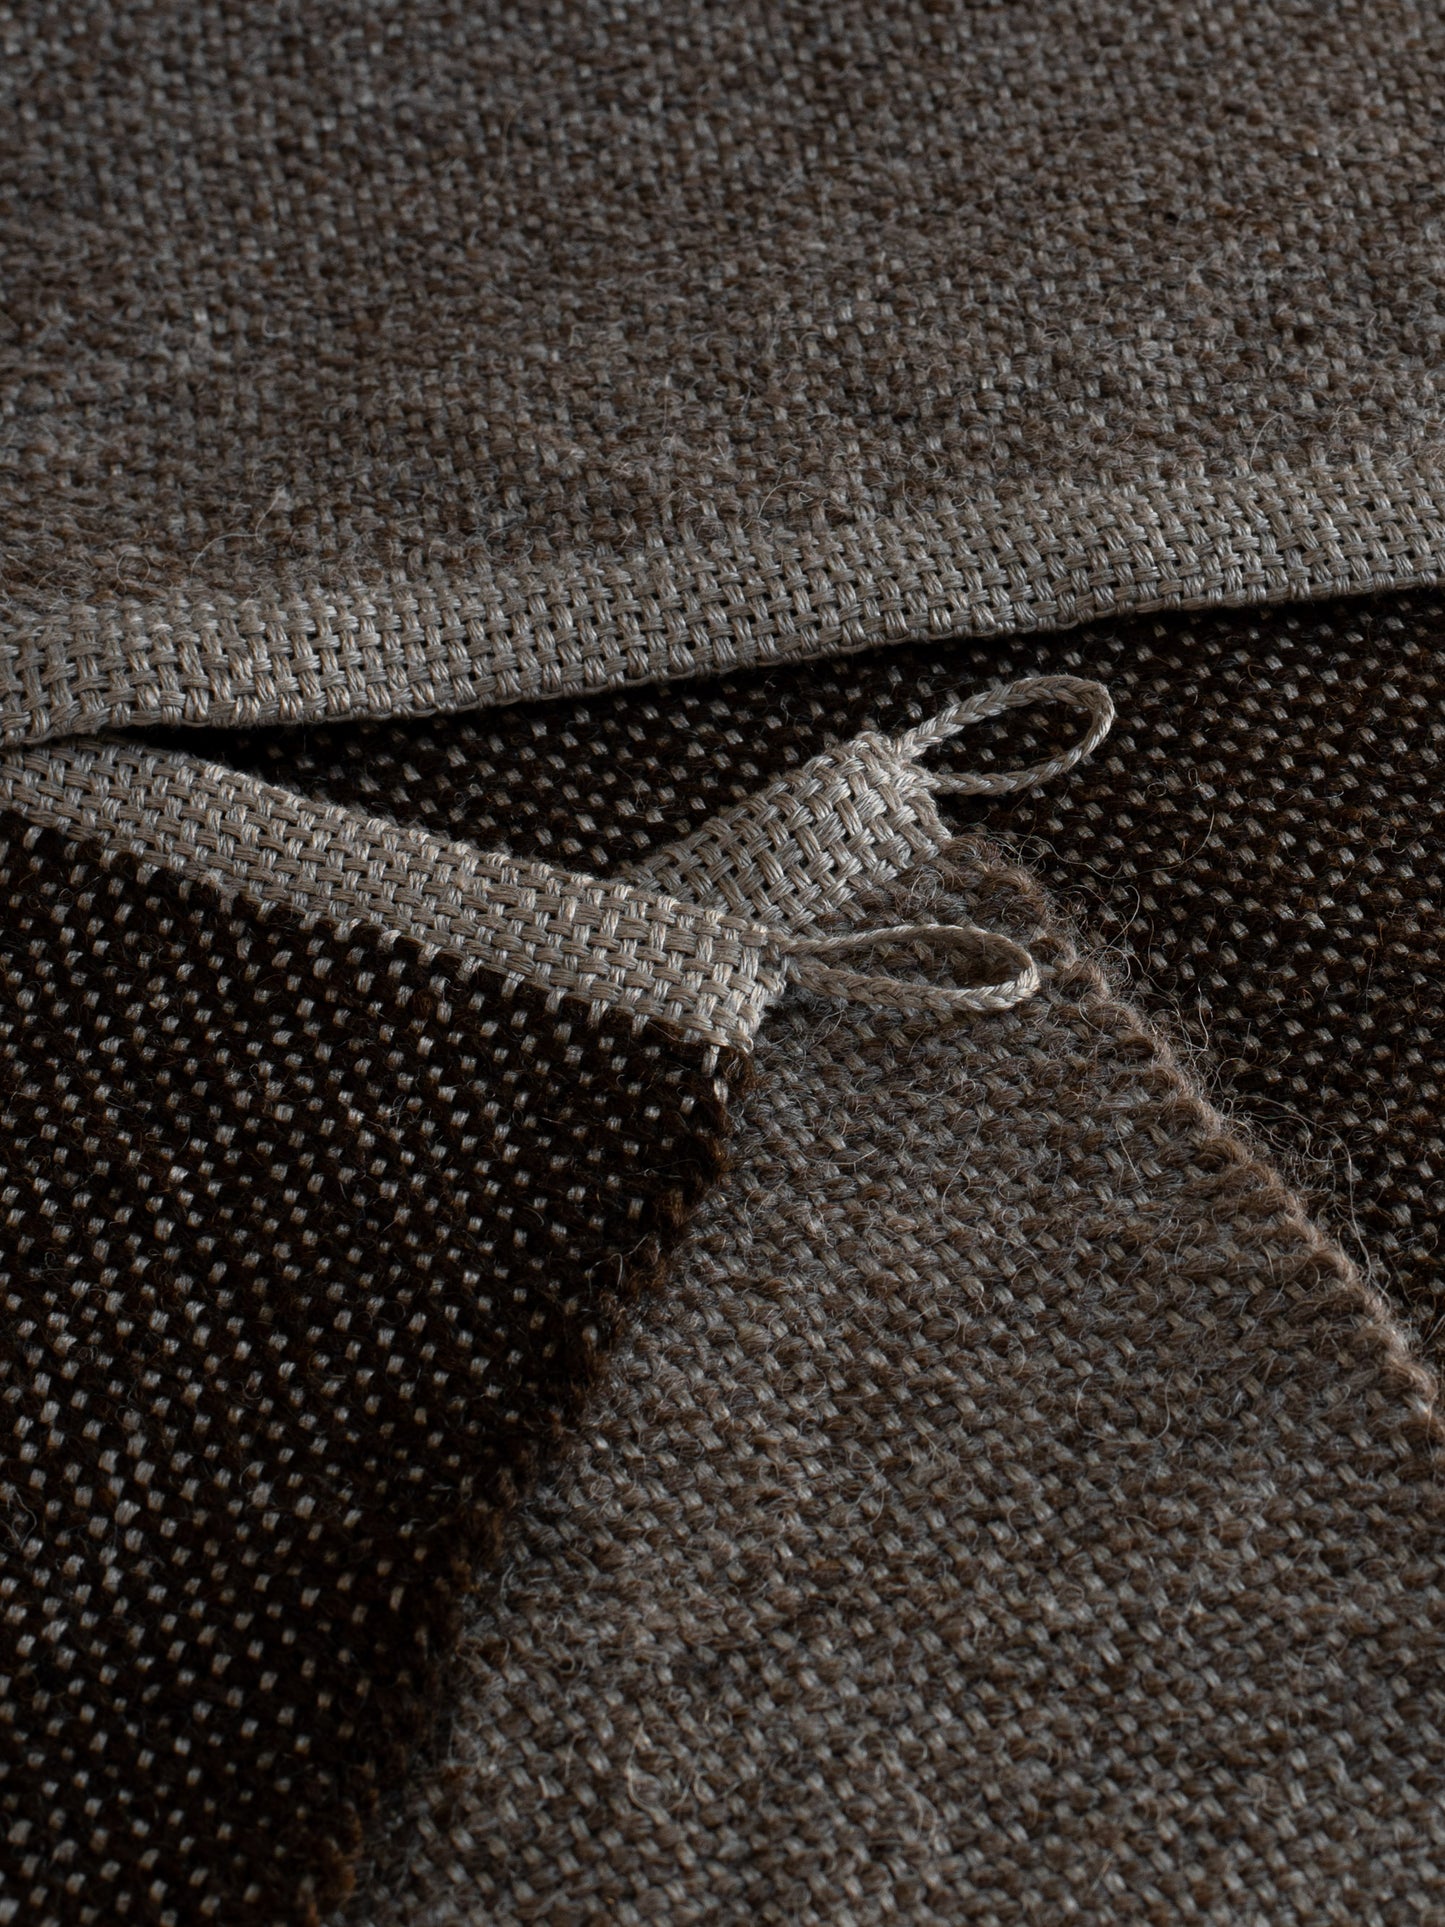 Handwoven Wool Mat - Natural